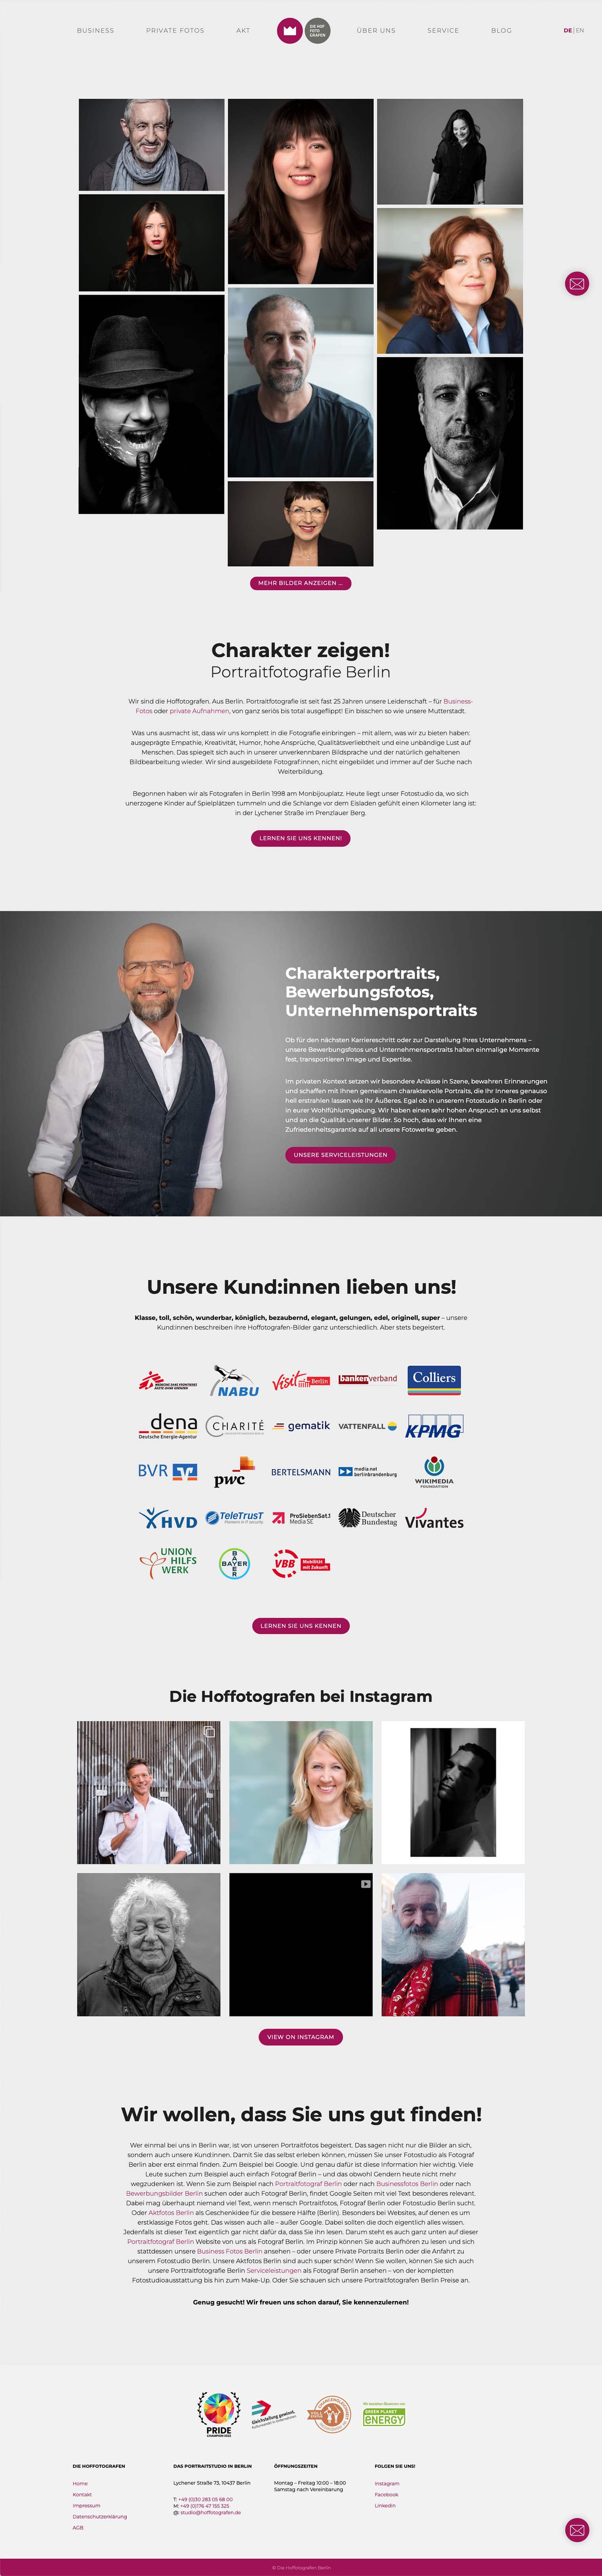 Web Design Berlin - New Webdesign for Hoffotografen Berlin